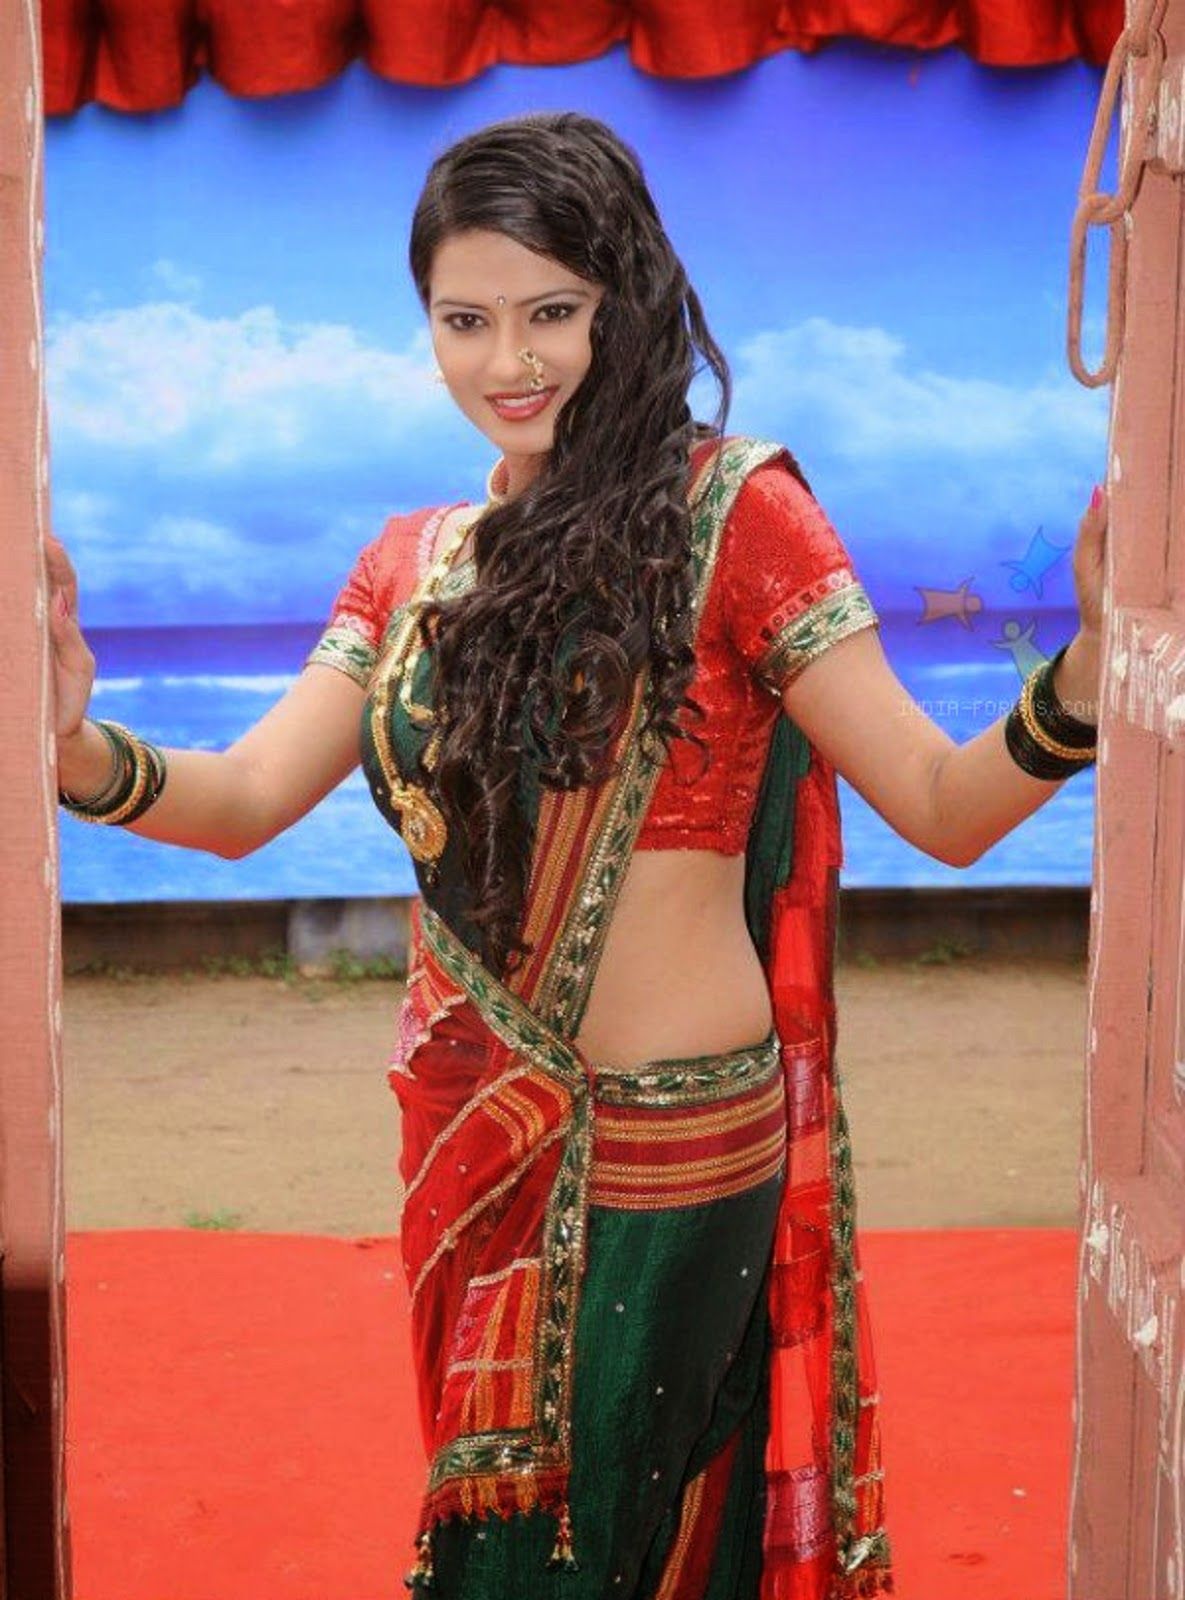 Kratika Sengar Xnxx - 15 Top Kratika Sengar Bollywood Serial Actress Images And Photos ...